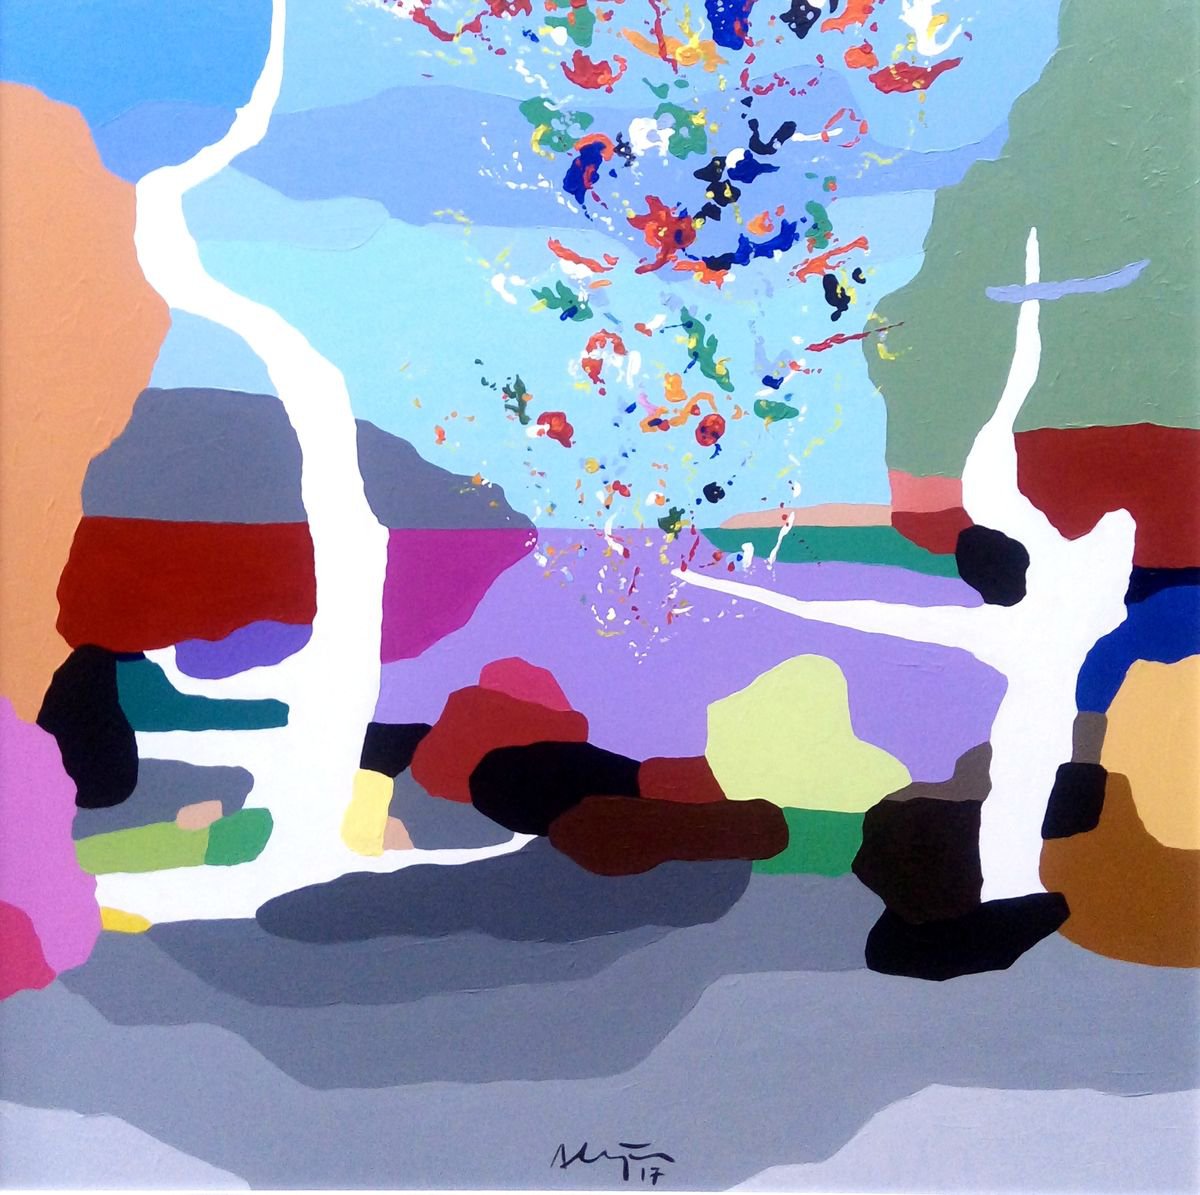 Particles (pop art, landscape) by Alejos